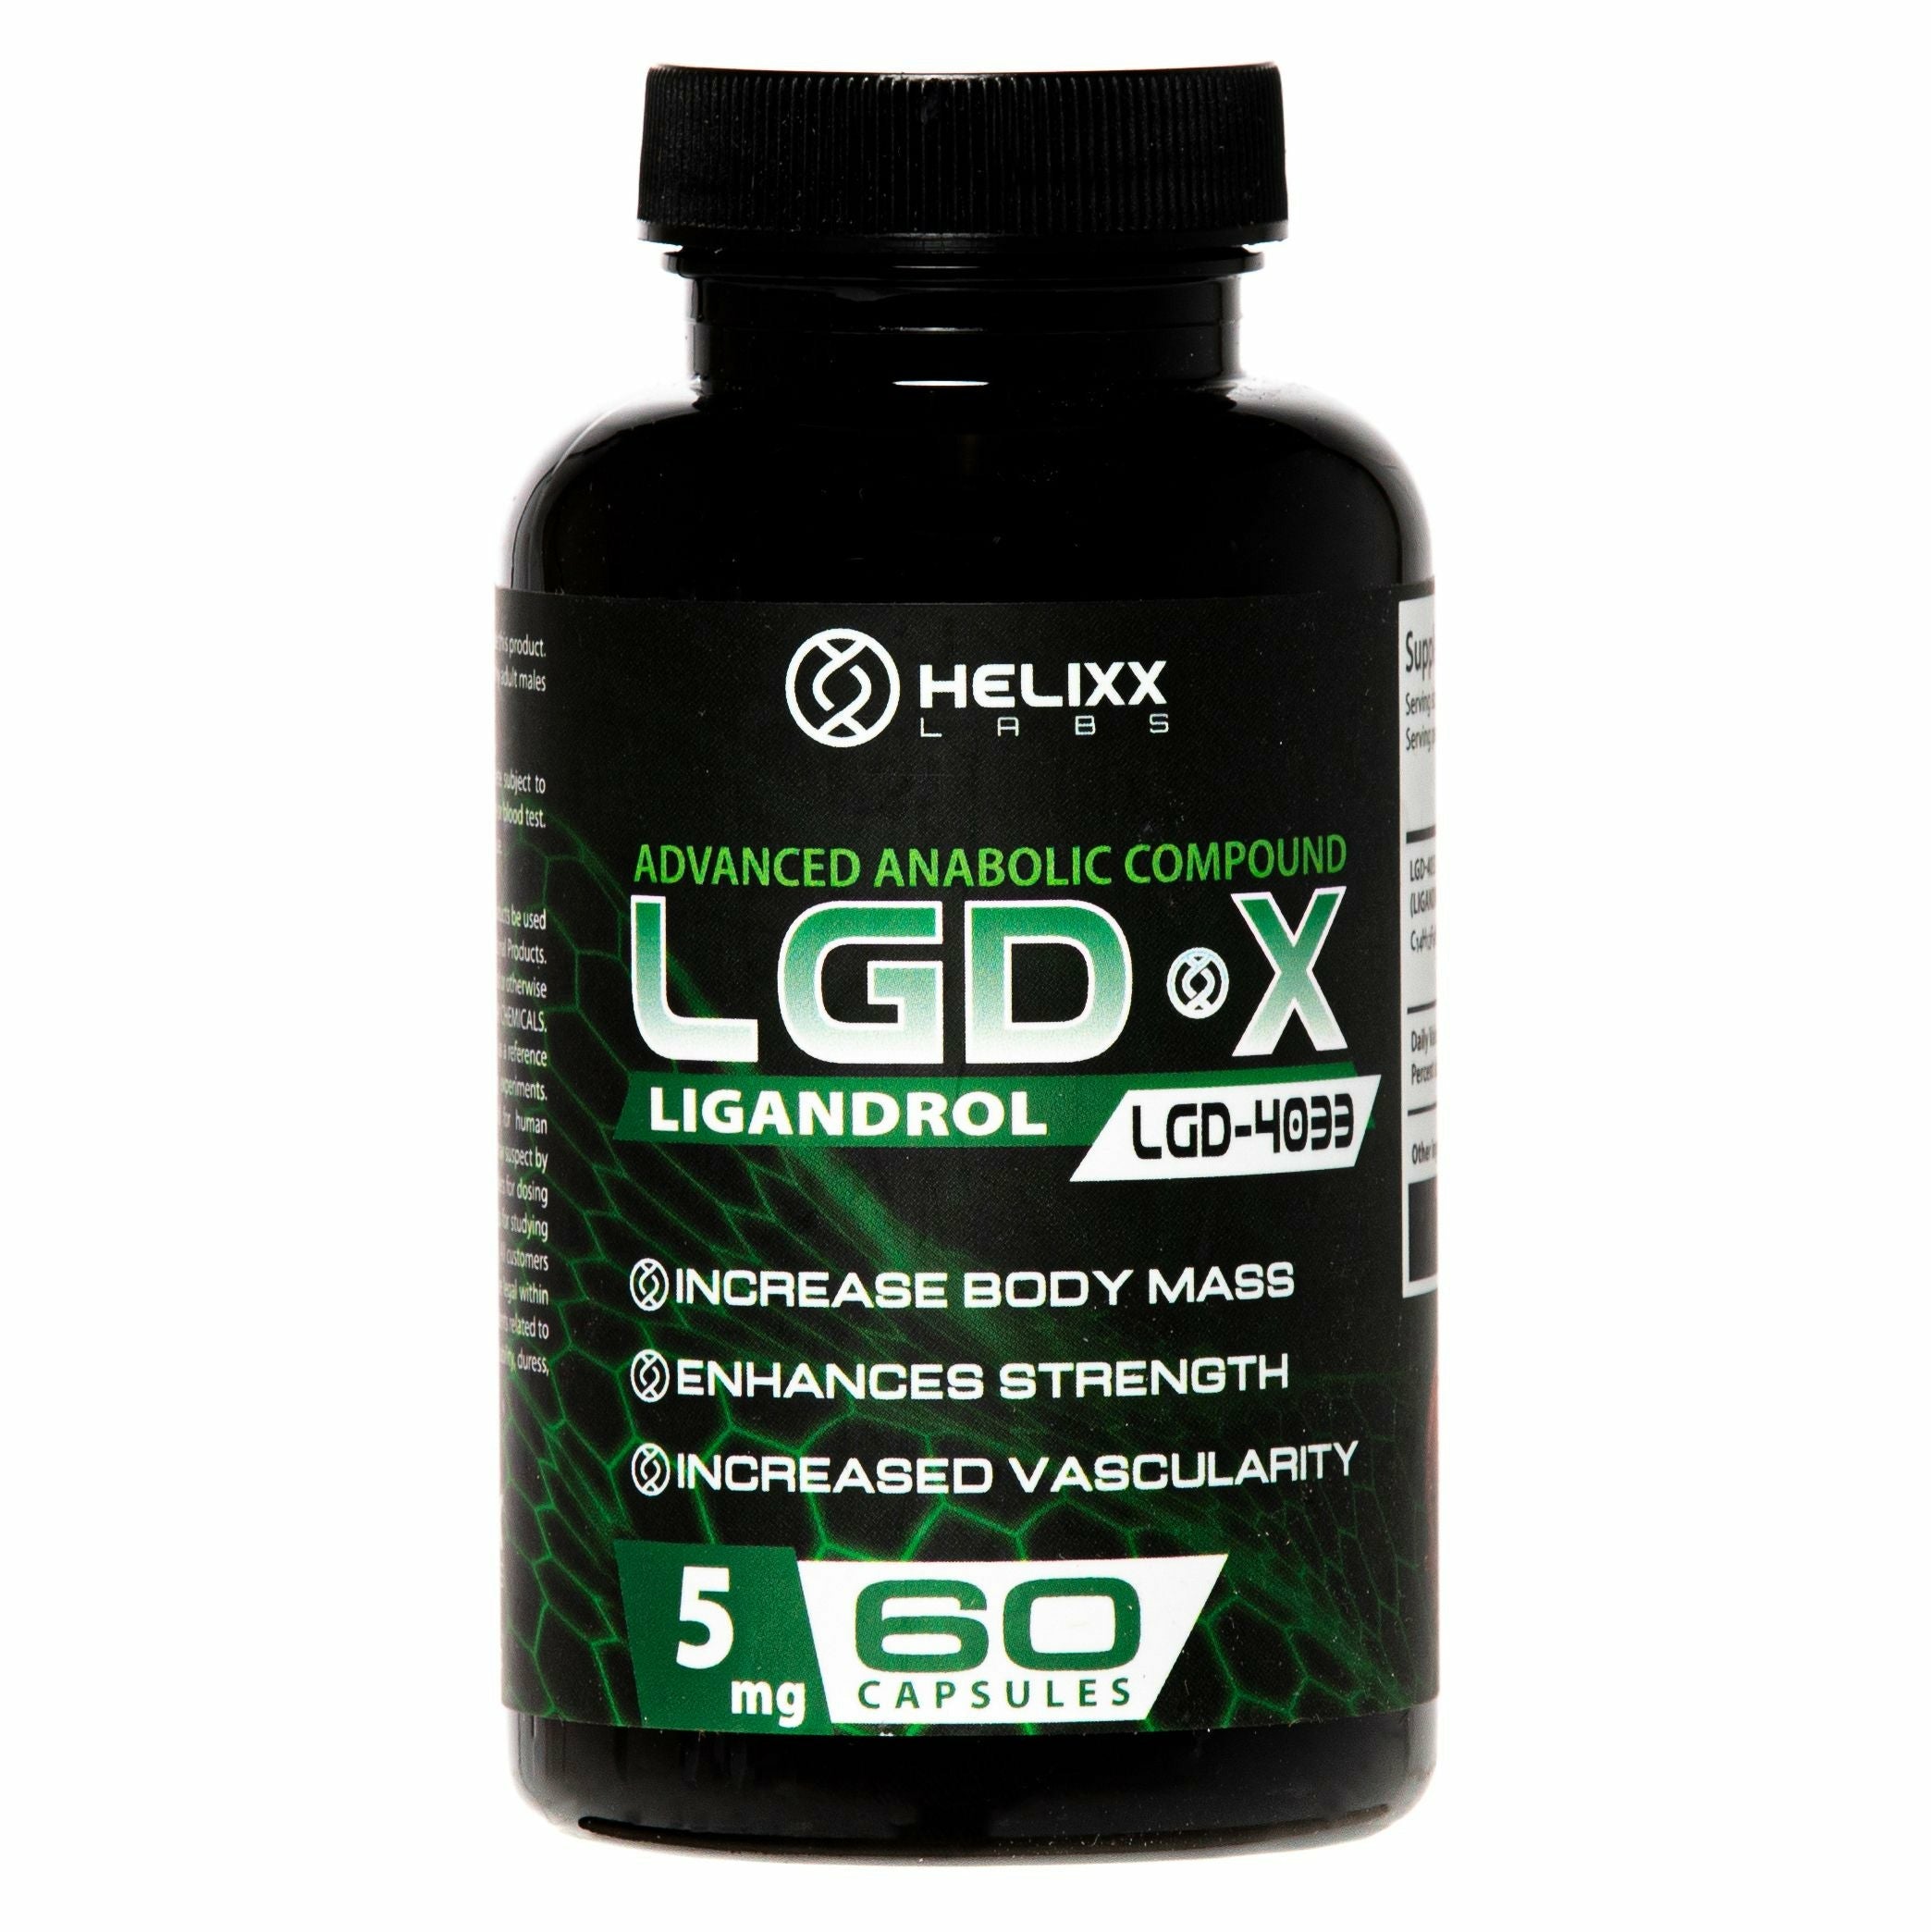 Helixx LGD X (5mg - 60 capsules) helixx-lgd-x-5mg-60-capsules Vitamins & Supplements Helixx